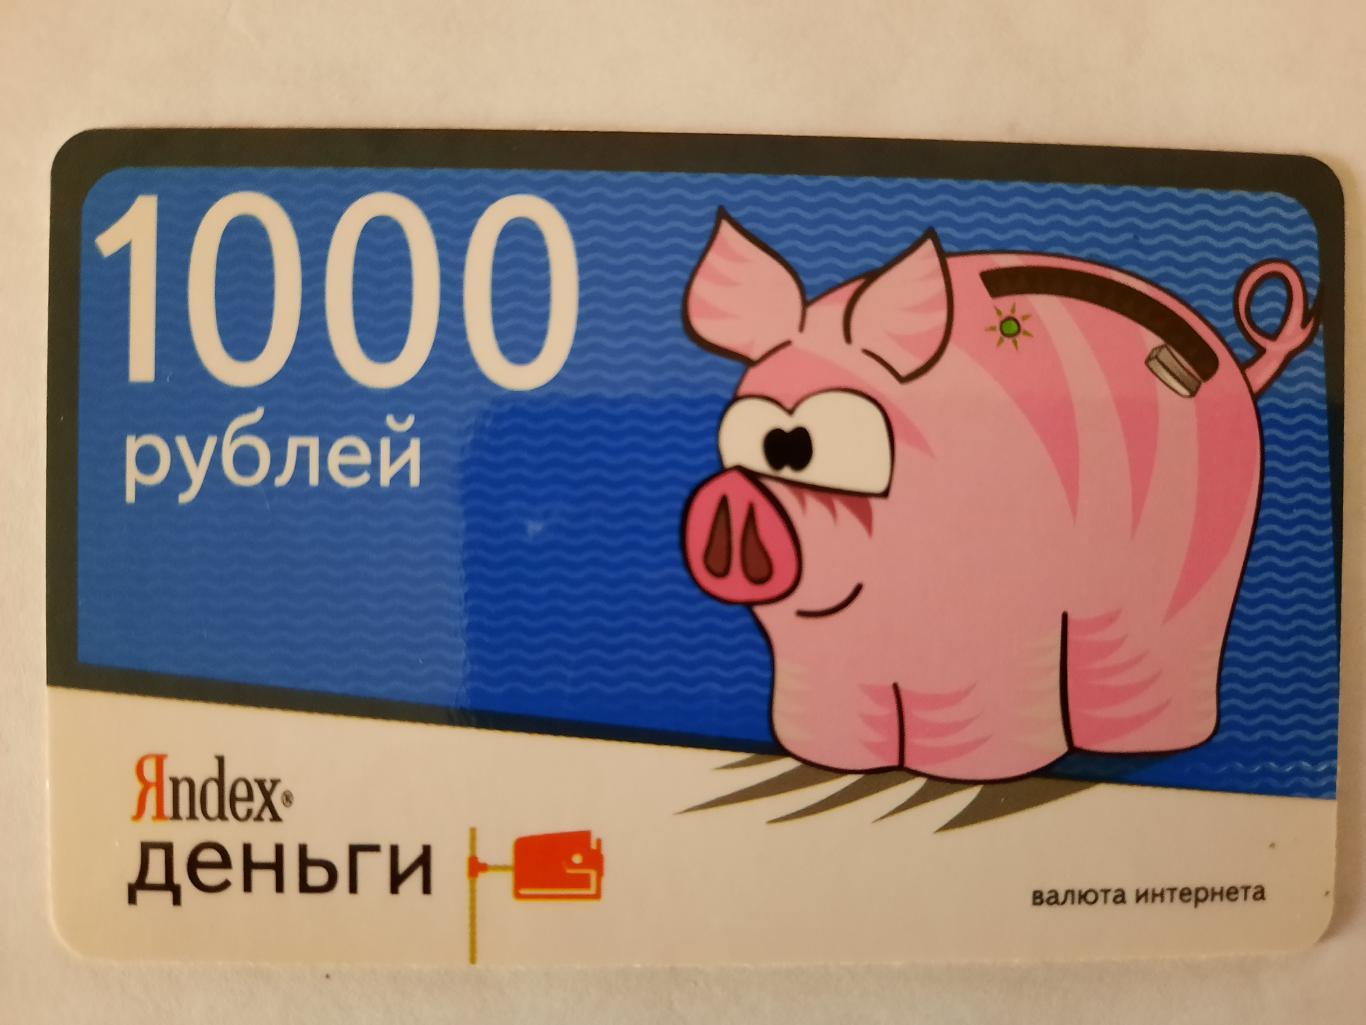 Карта Яндекс деньги (вид 2)